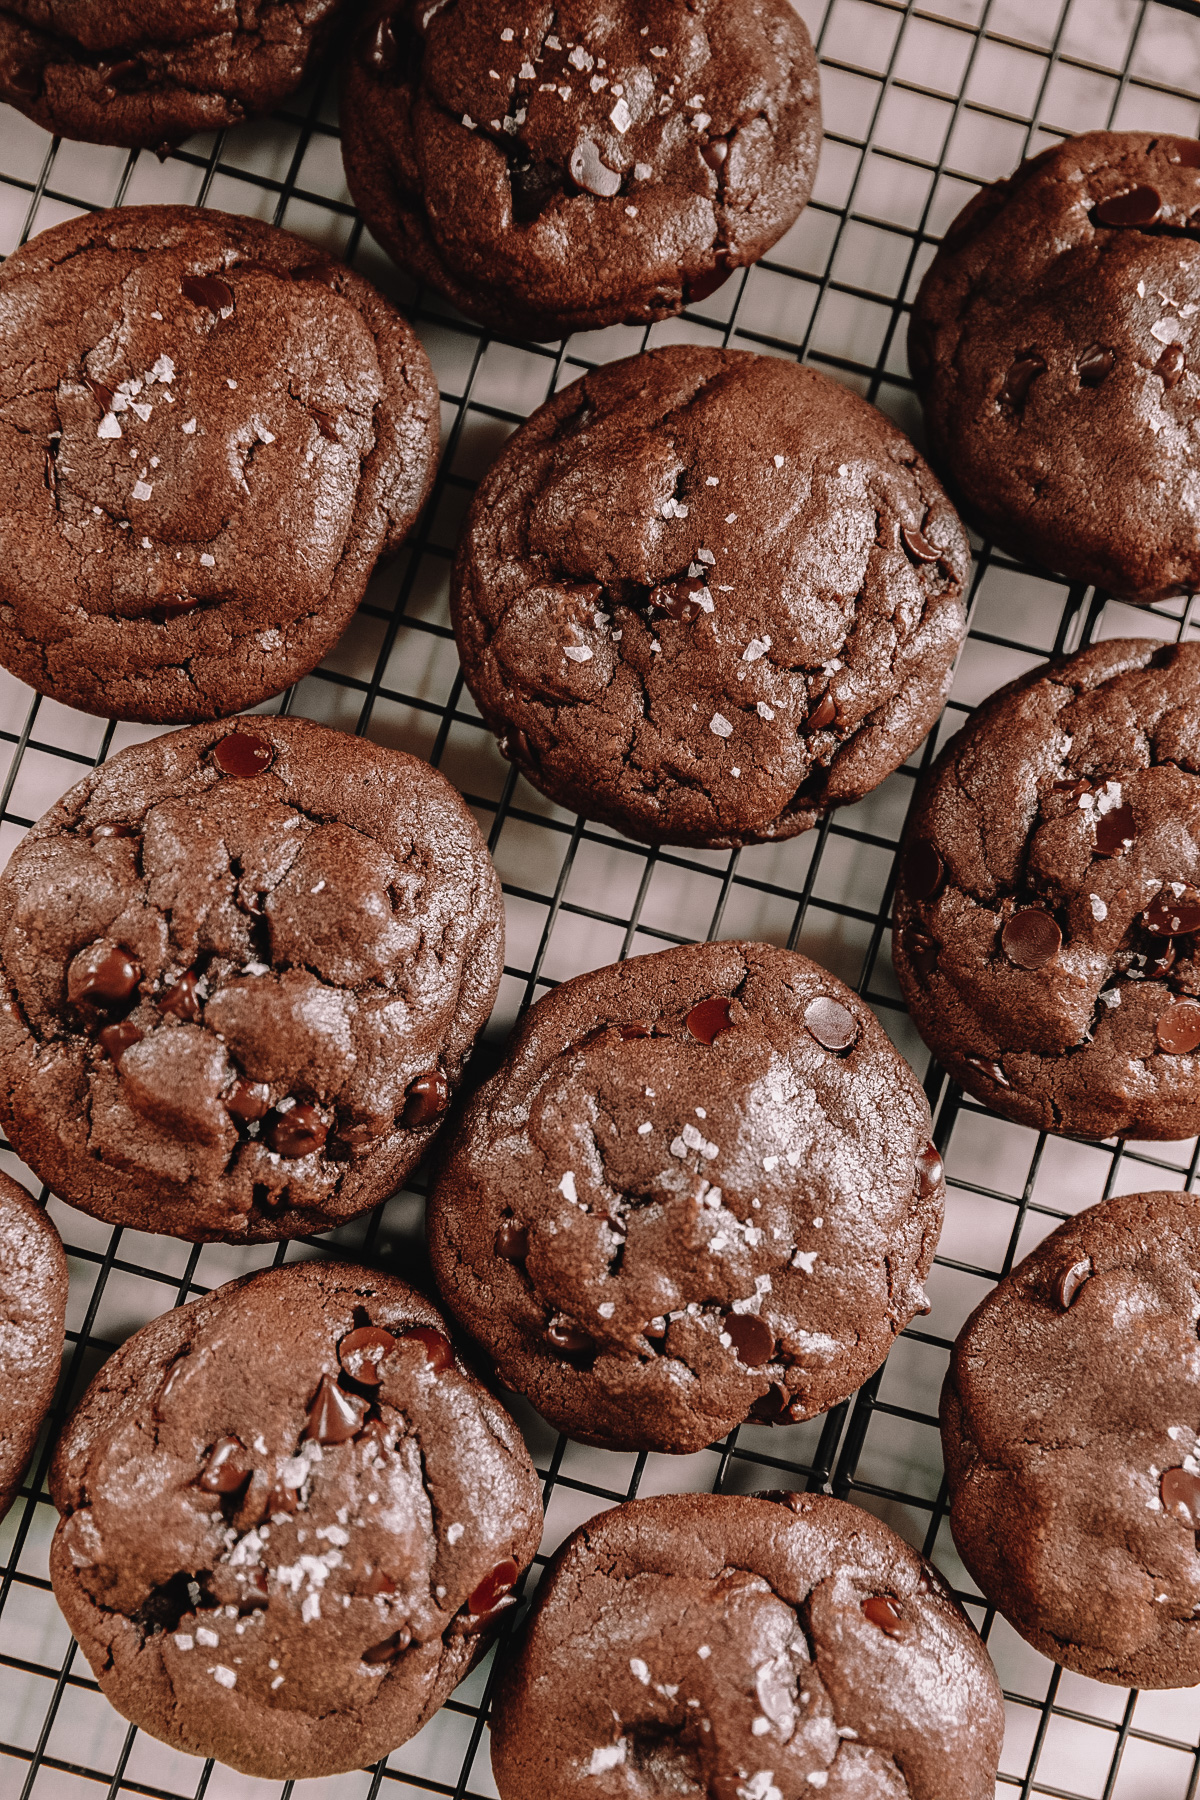 https://studiodiy.com/wp-content/uploads/2020/10/Double-Chocolate-Chip-Cookies-Milkjar.jpg